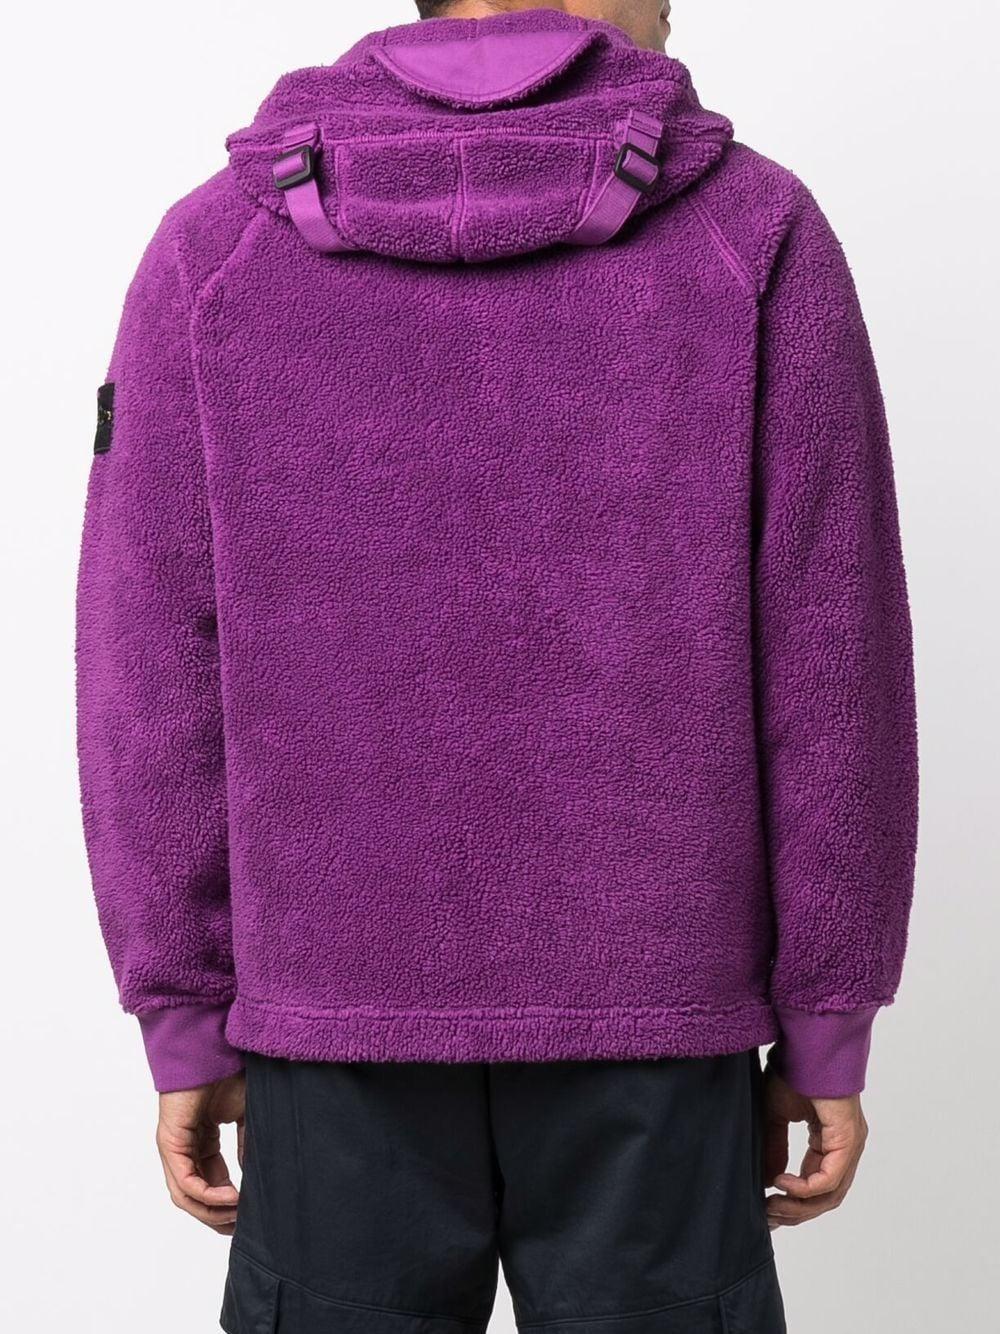 Stone Island Logo Patch Fleece Jacket in Purple for Men | Lyst